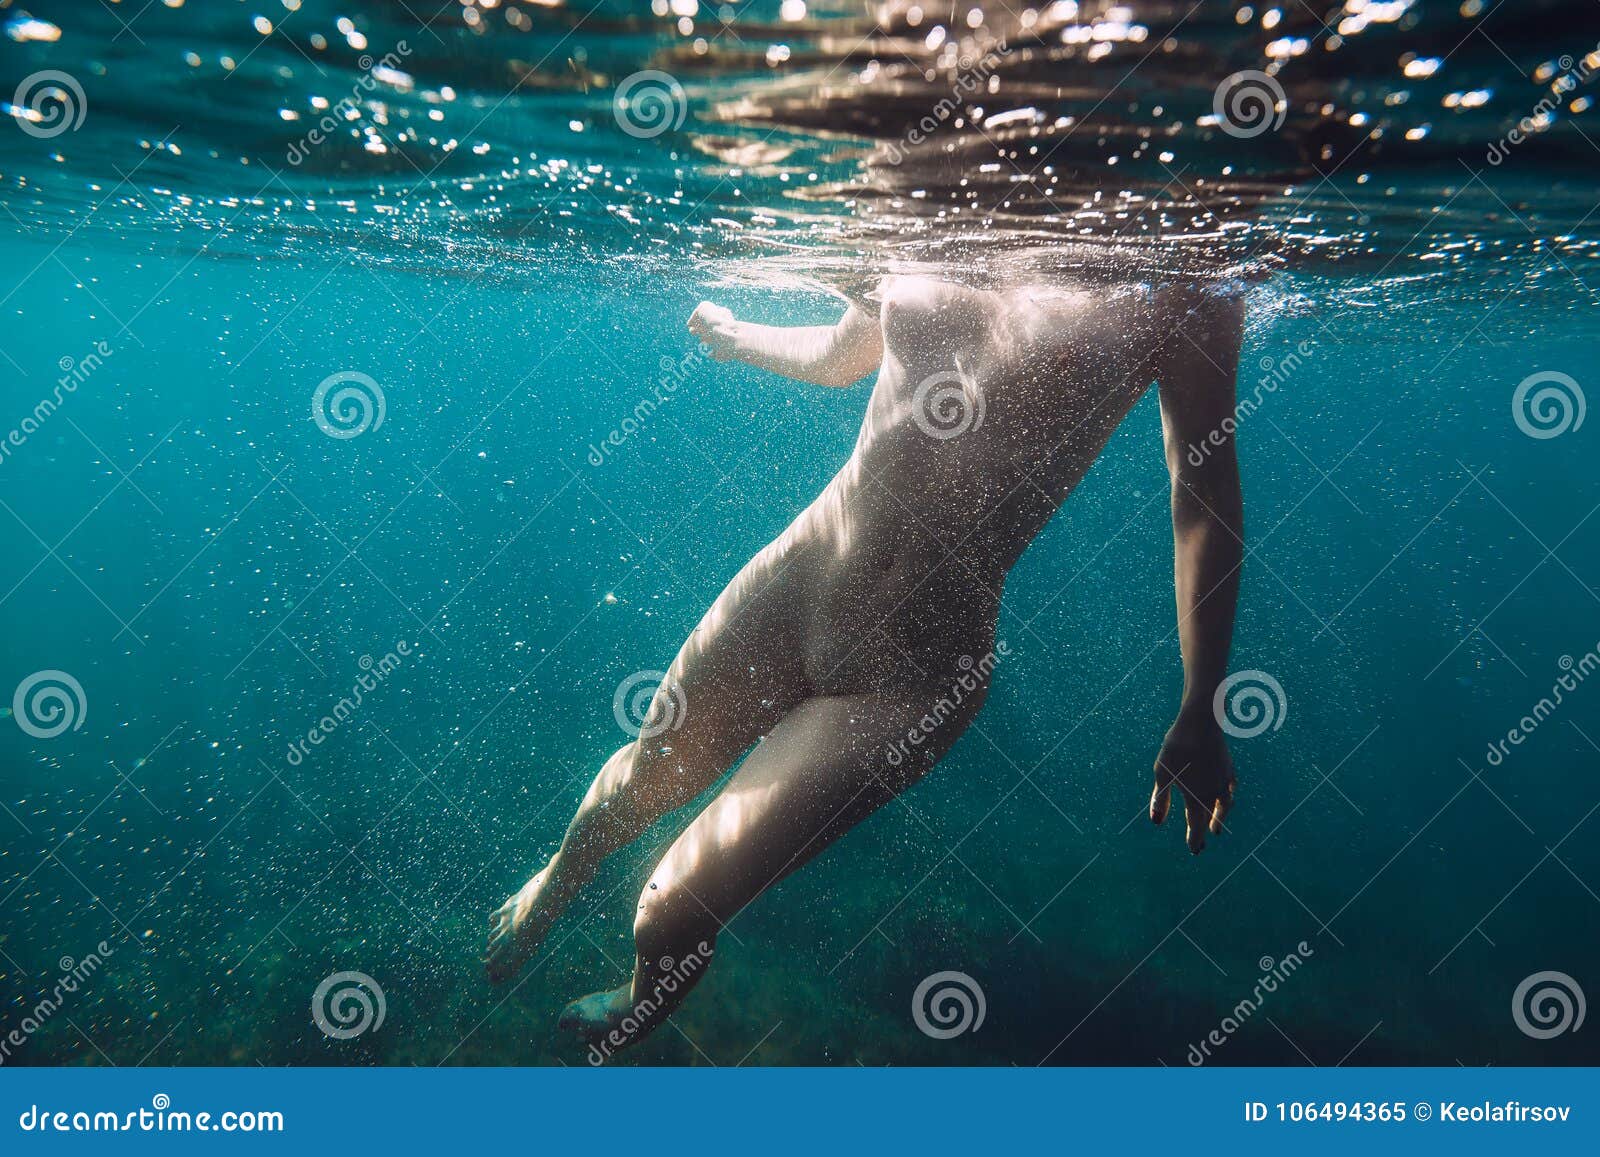 adam coss recommends Nude Women Under Water